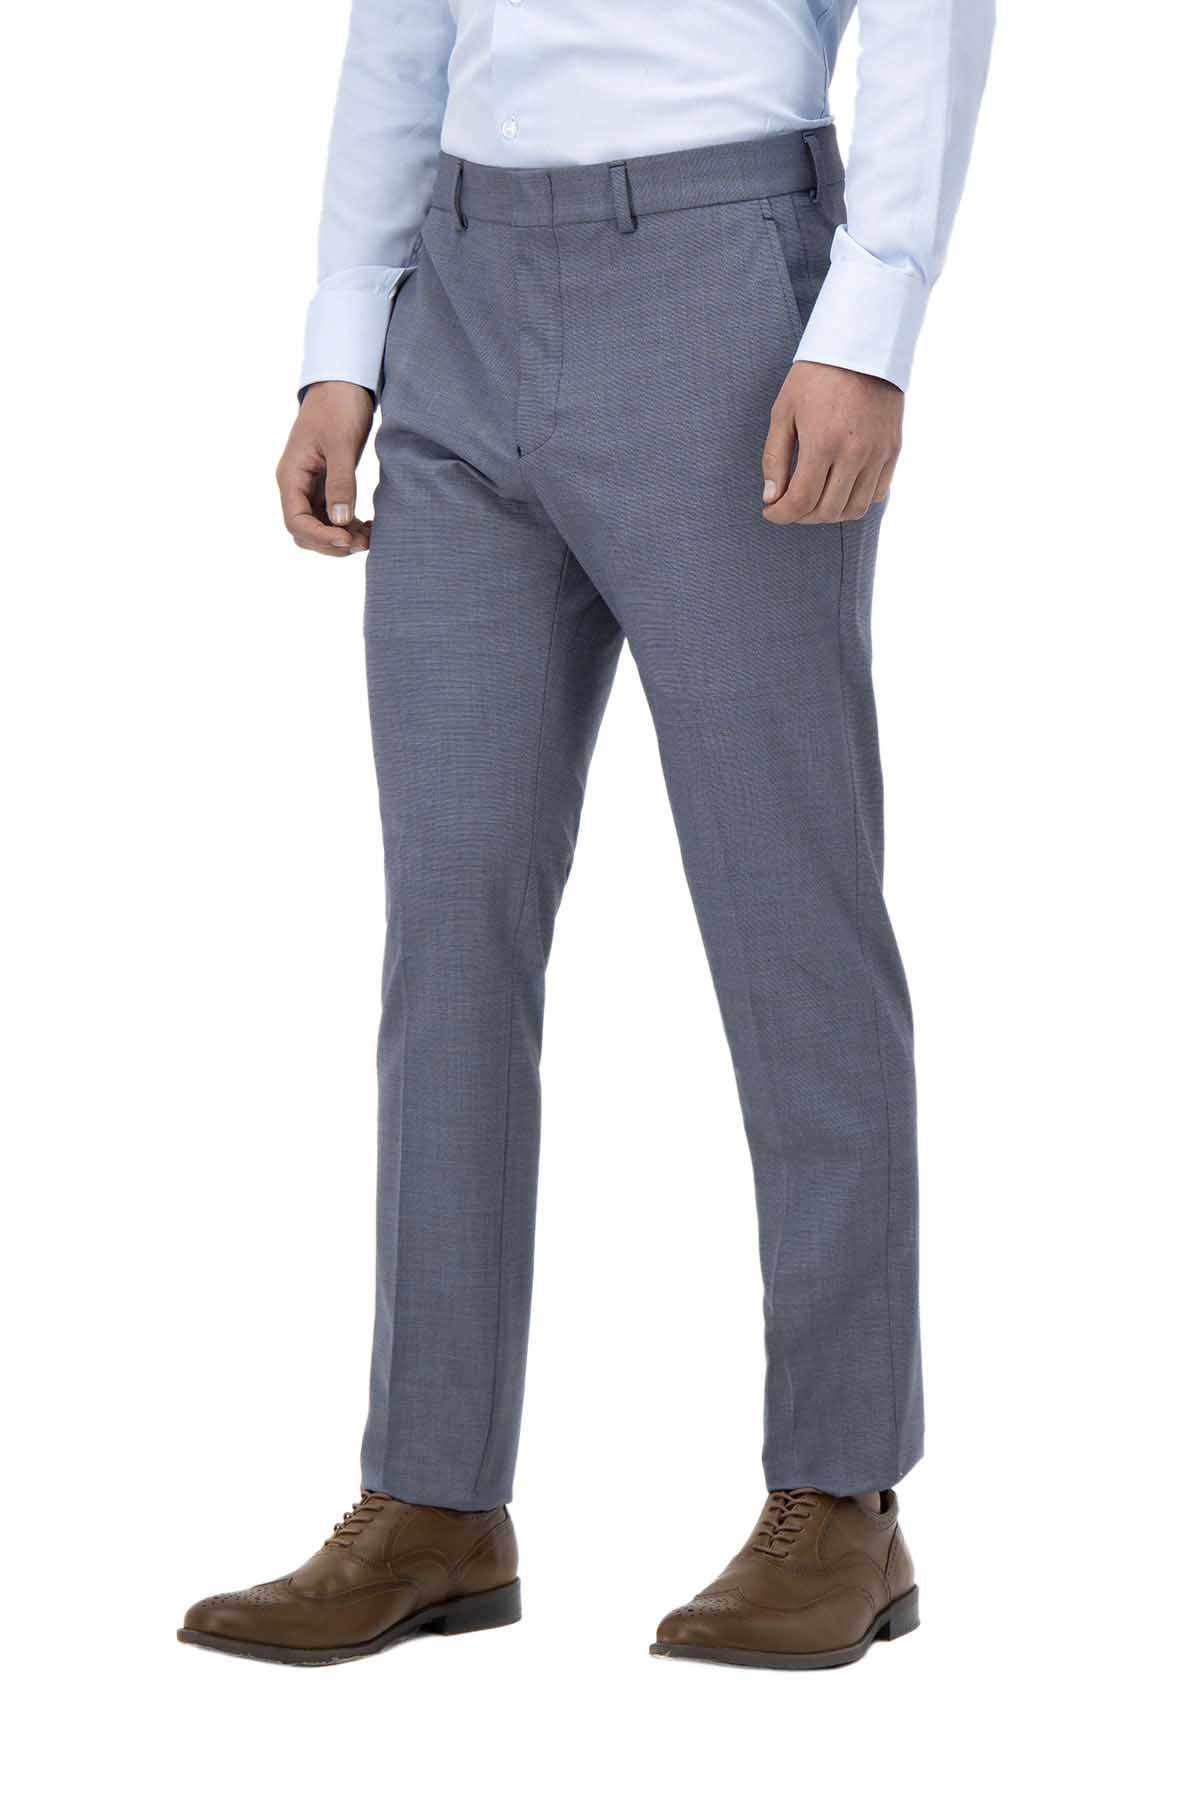 Diseños Labor Pantalón de Vestir para Hombre Corte Slim 100%Lana Color Gris  Oxford (30) : : Ropa, Zapatos y Accesorios